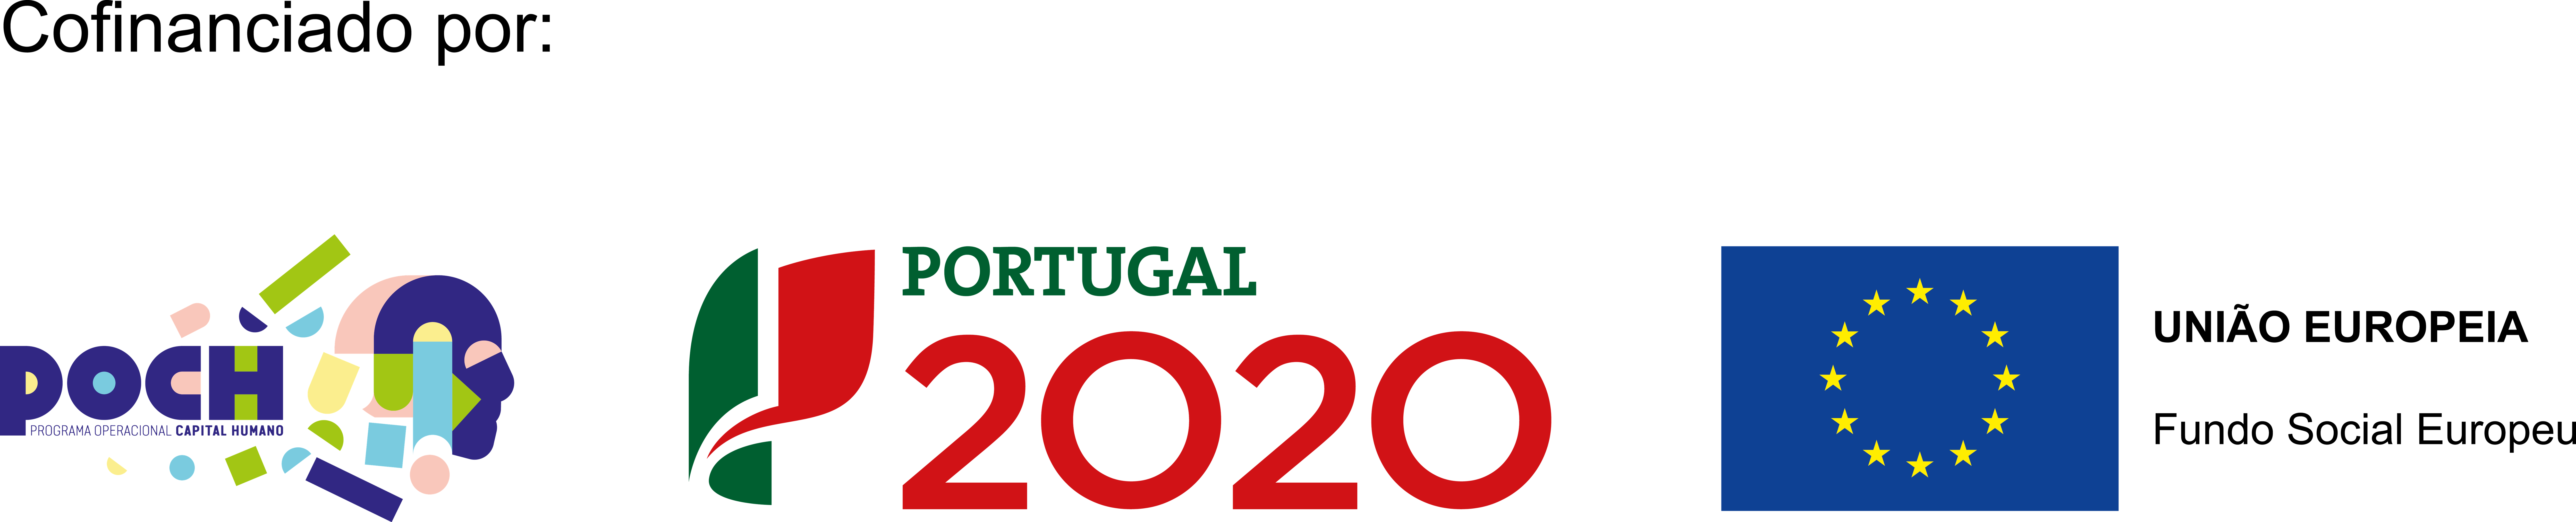 Cofinanciado por: POCH, Portugal 2020, União Europeia